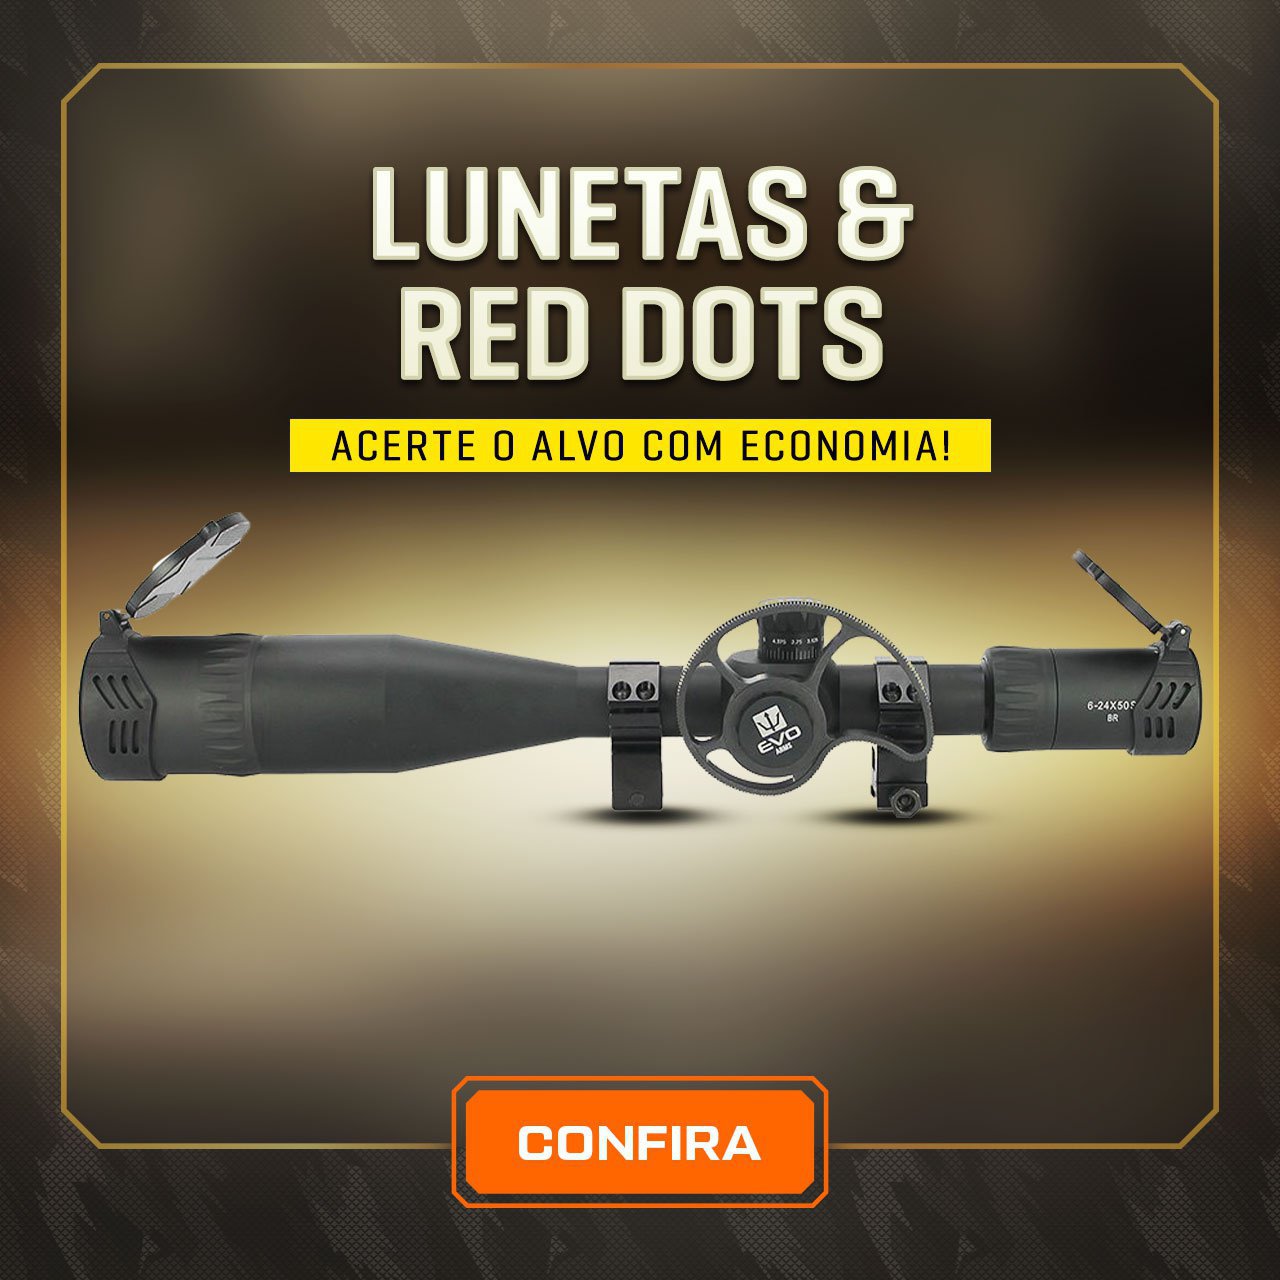 Lunetas & Red Dots - Acerte o Alvo com economia!